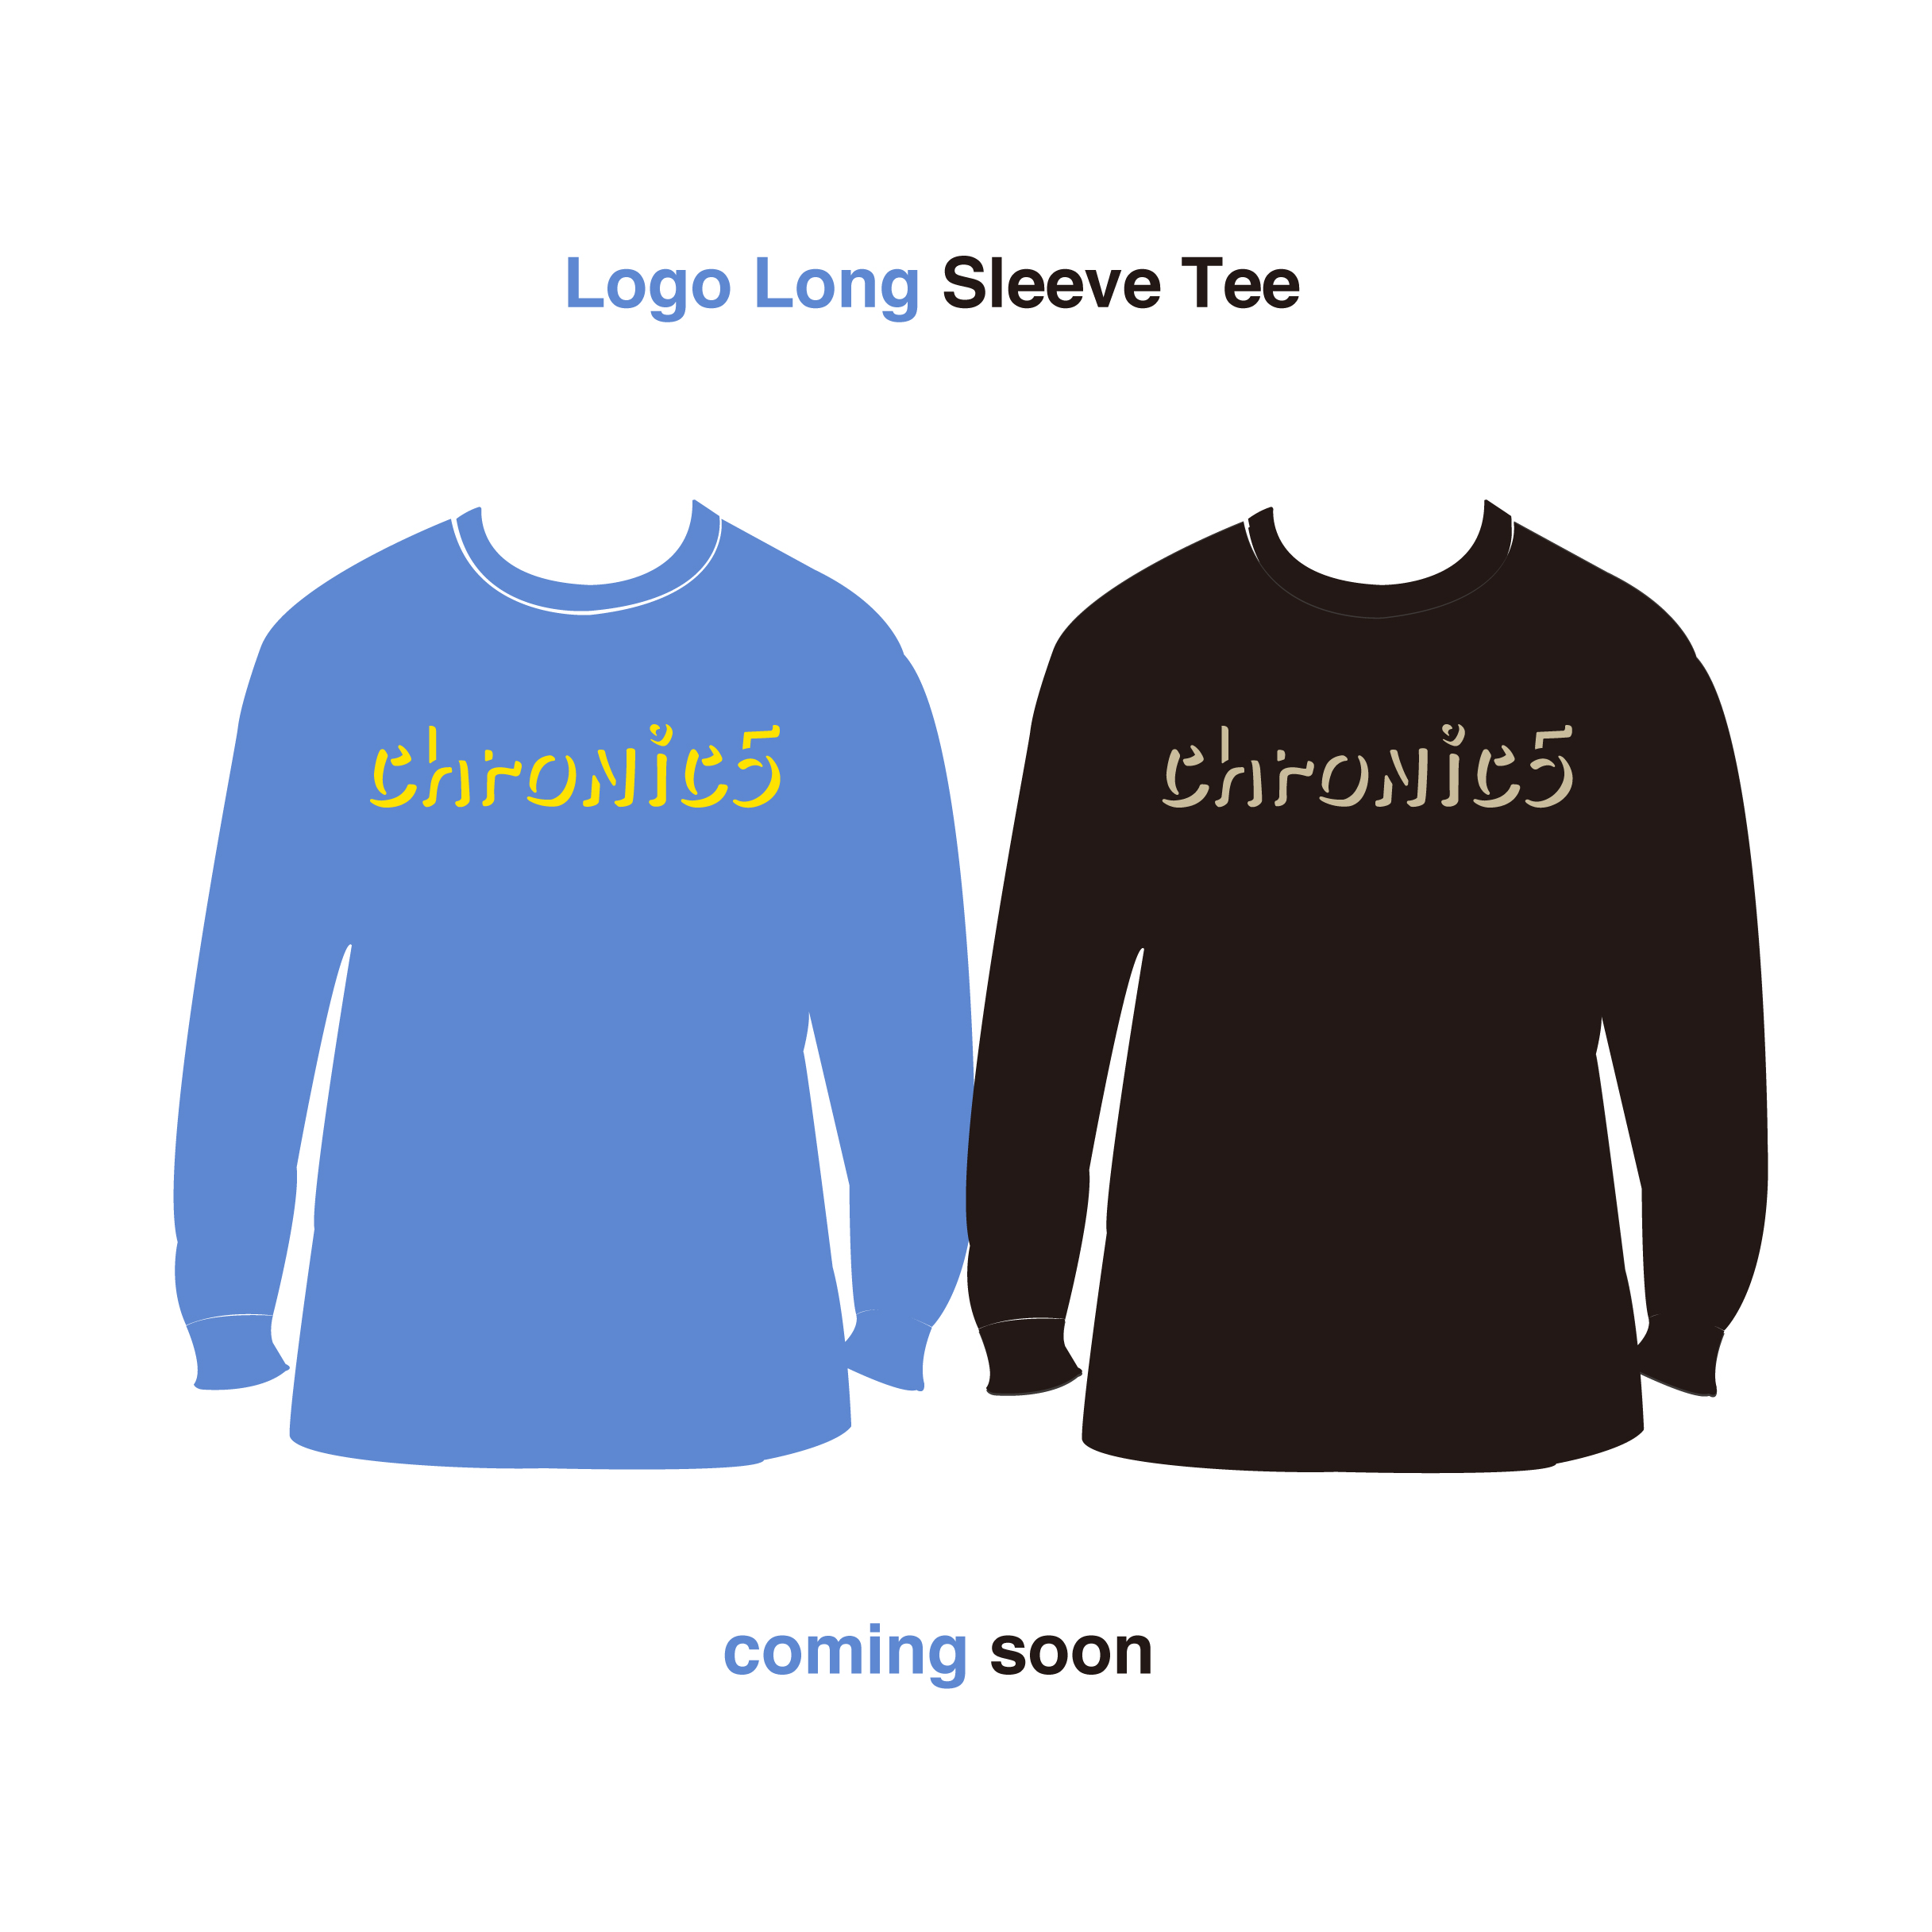 Logo Long Sleeve Tee coming soon by chronic5